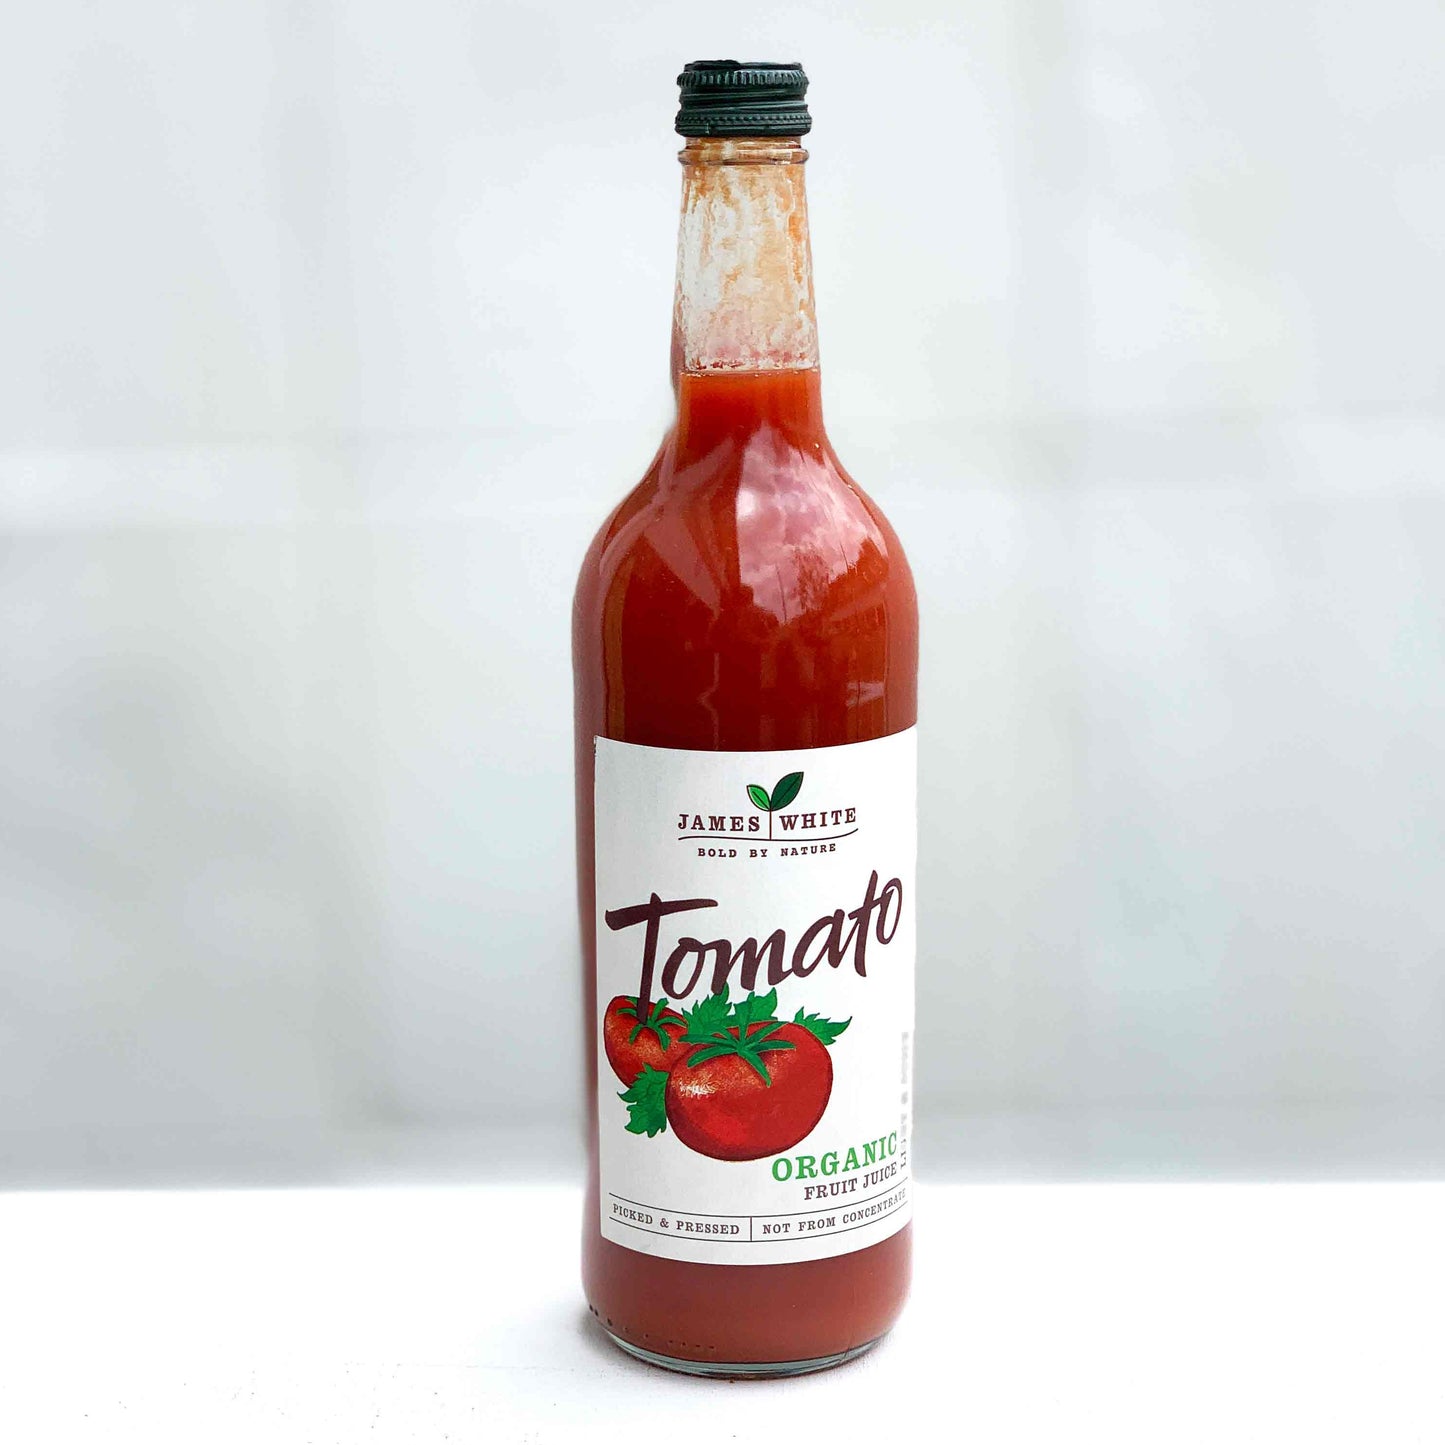 James White Tomato Juice